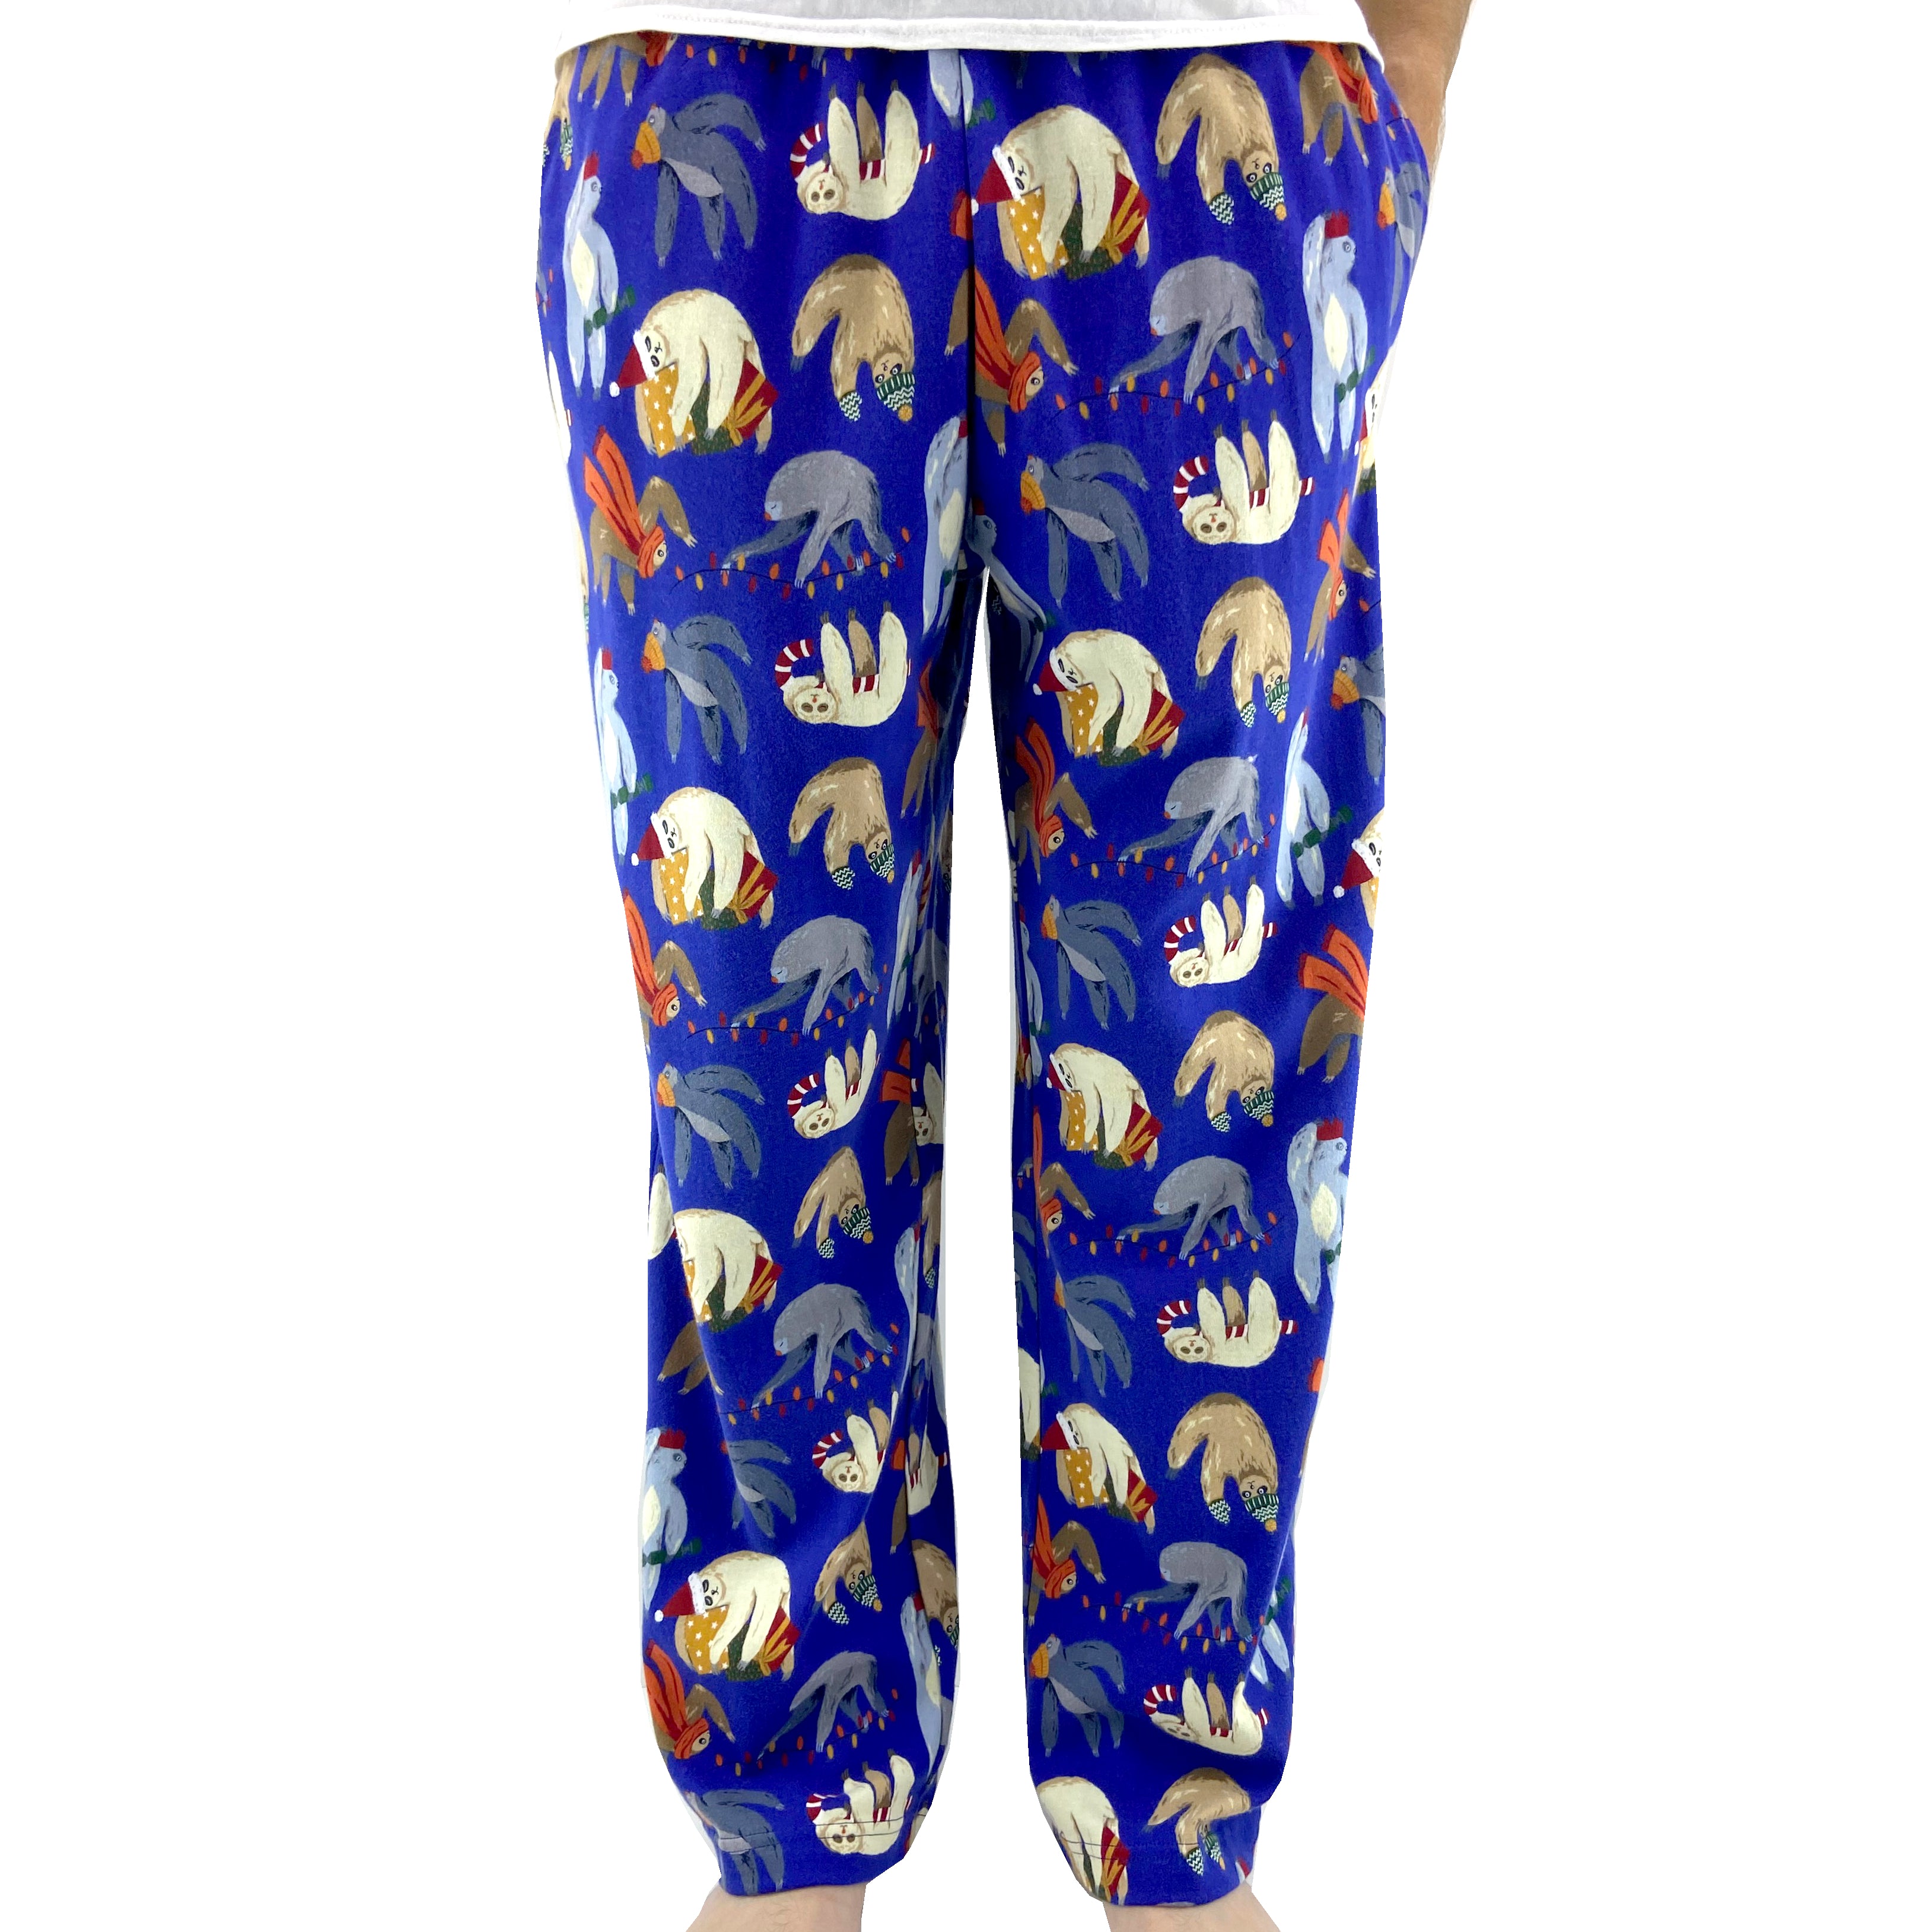 Super Soft Sleepy Christmas Sloth Print Long Cotton Knit Pajama Pants